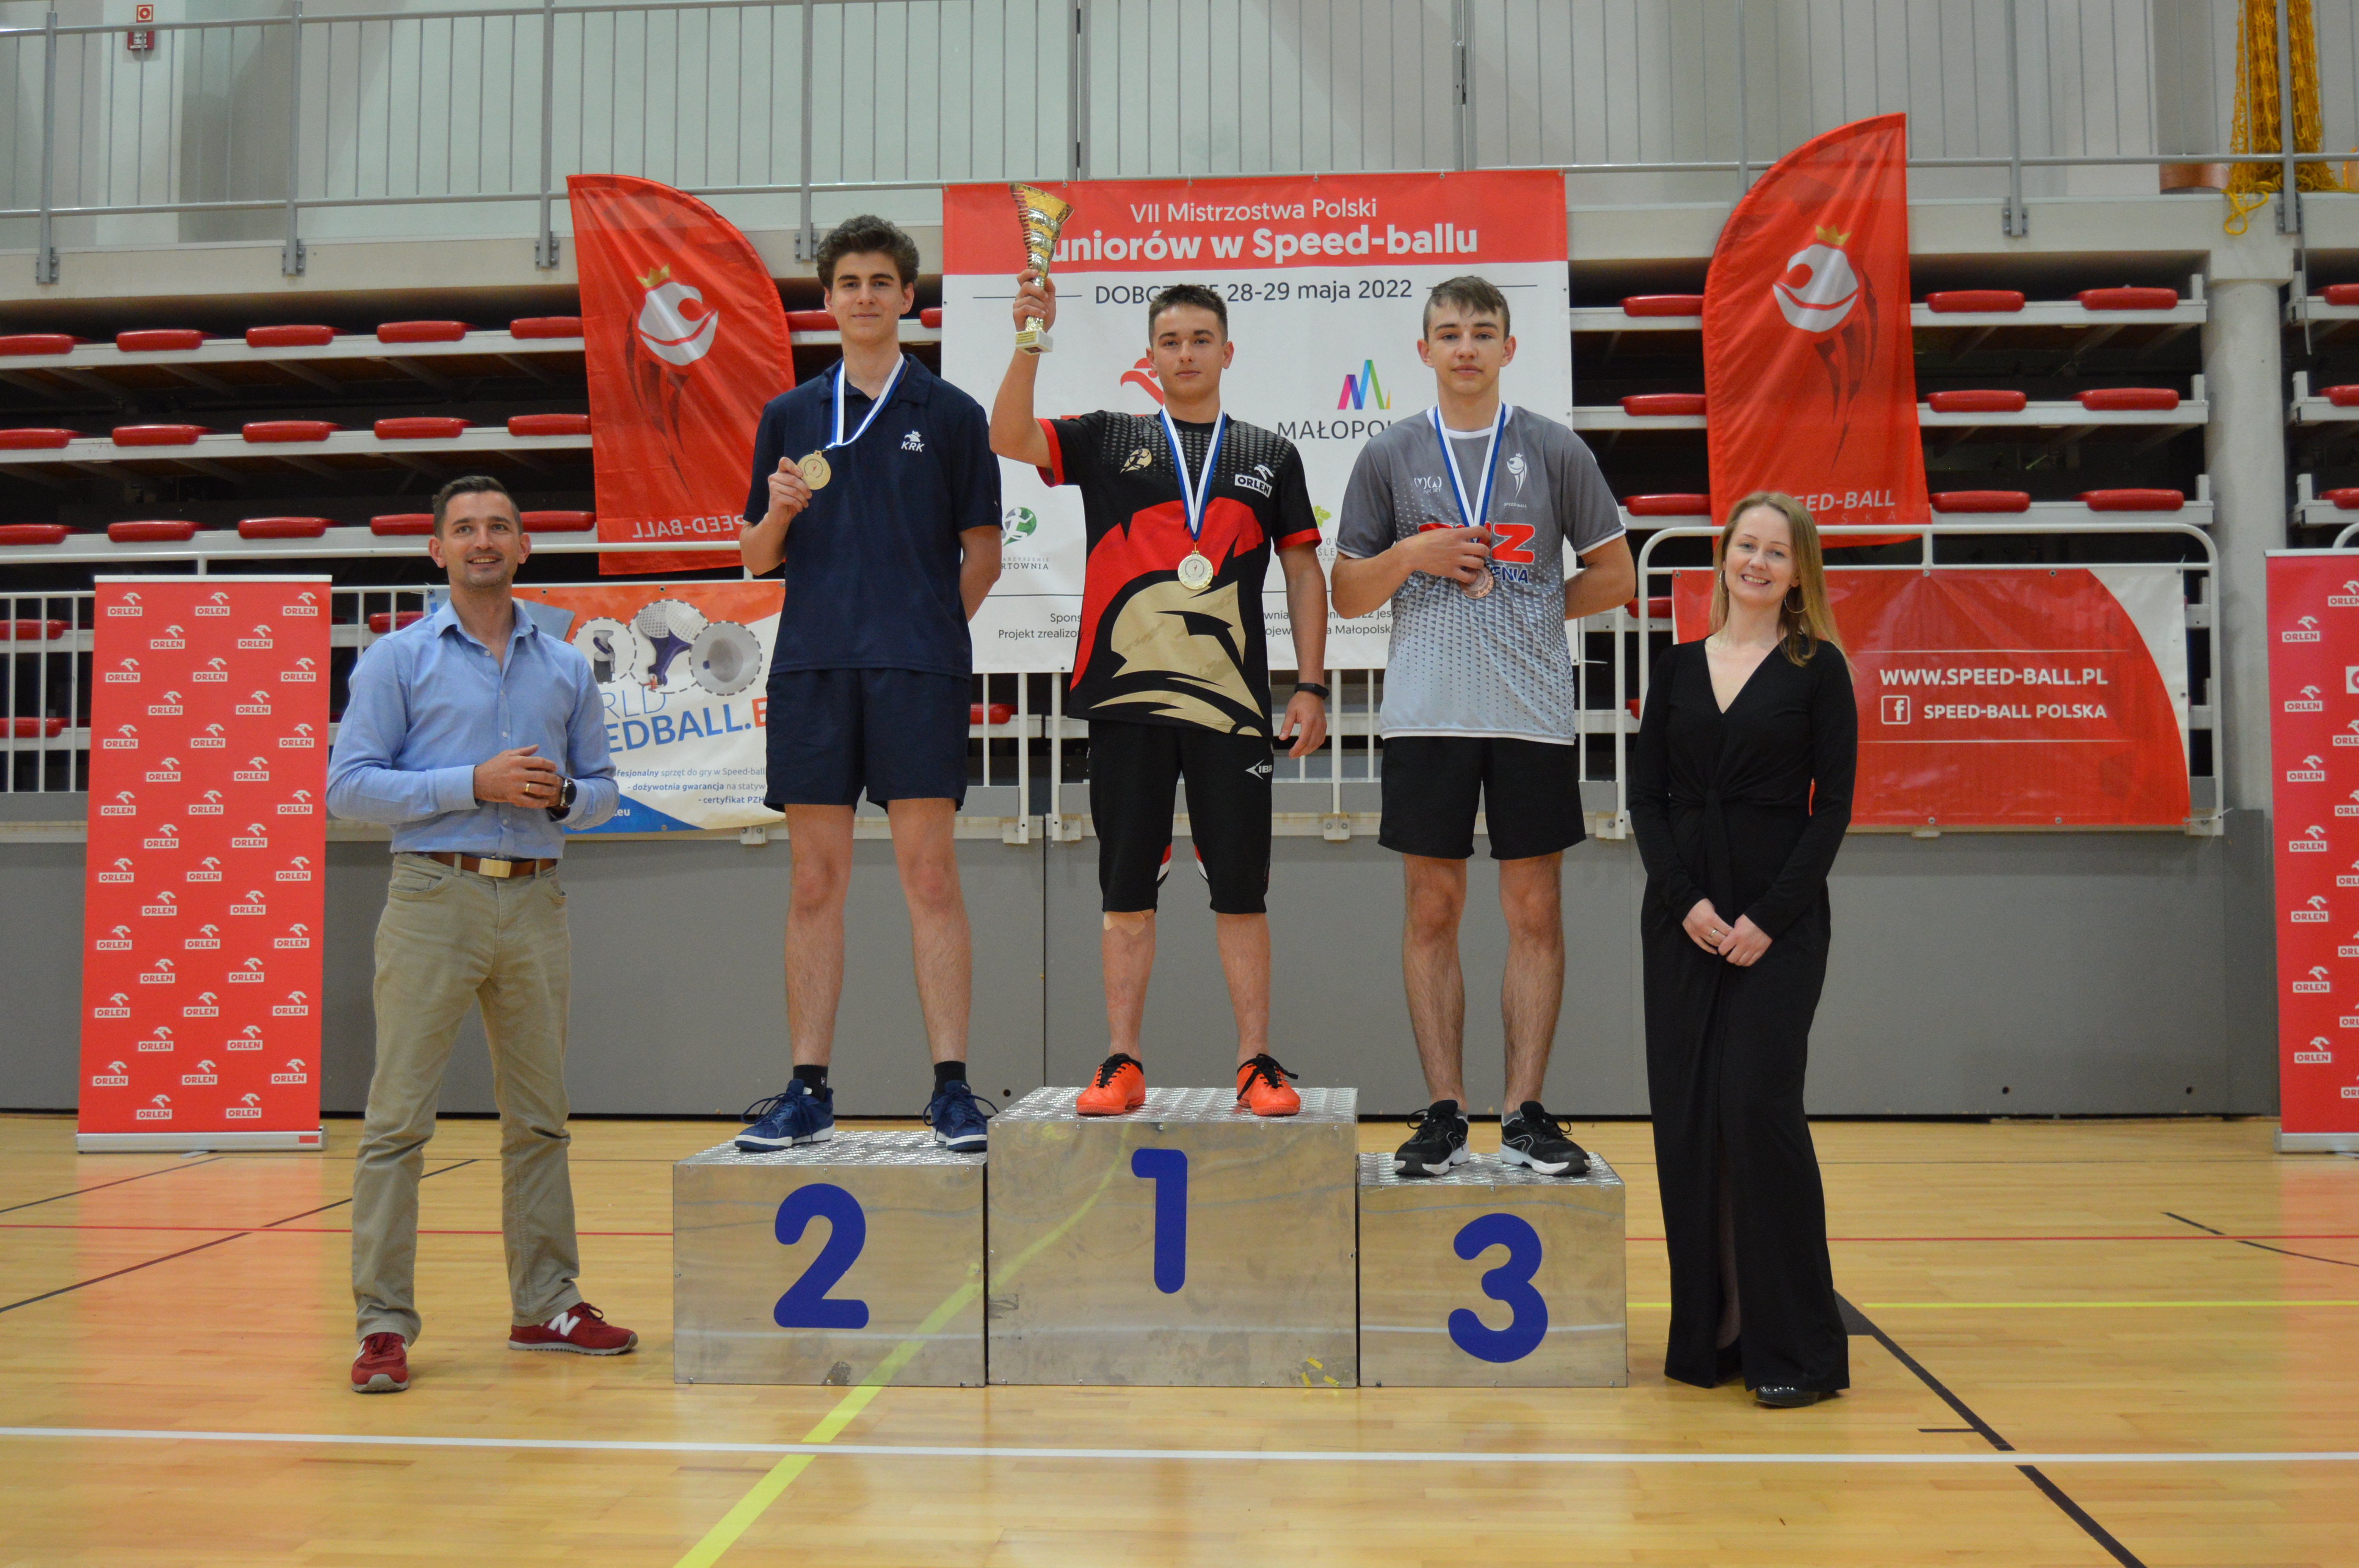 6 medali lubelskich zawodników na VII Mistrzostwach Polski Juniorów w Speed-Ball (zdjęcia)